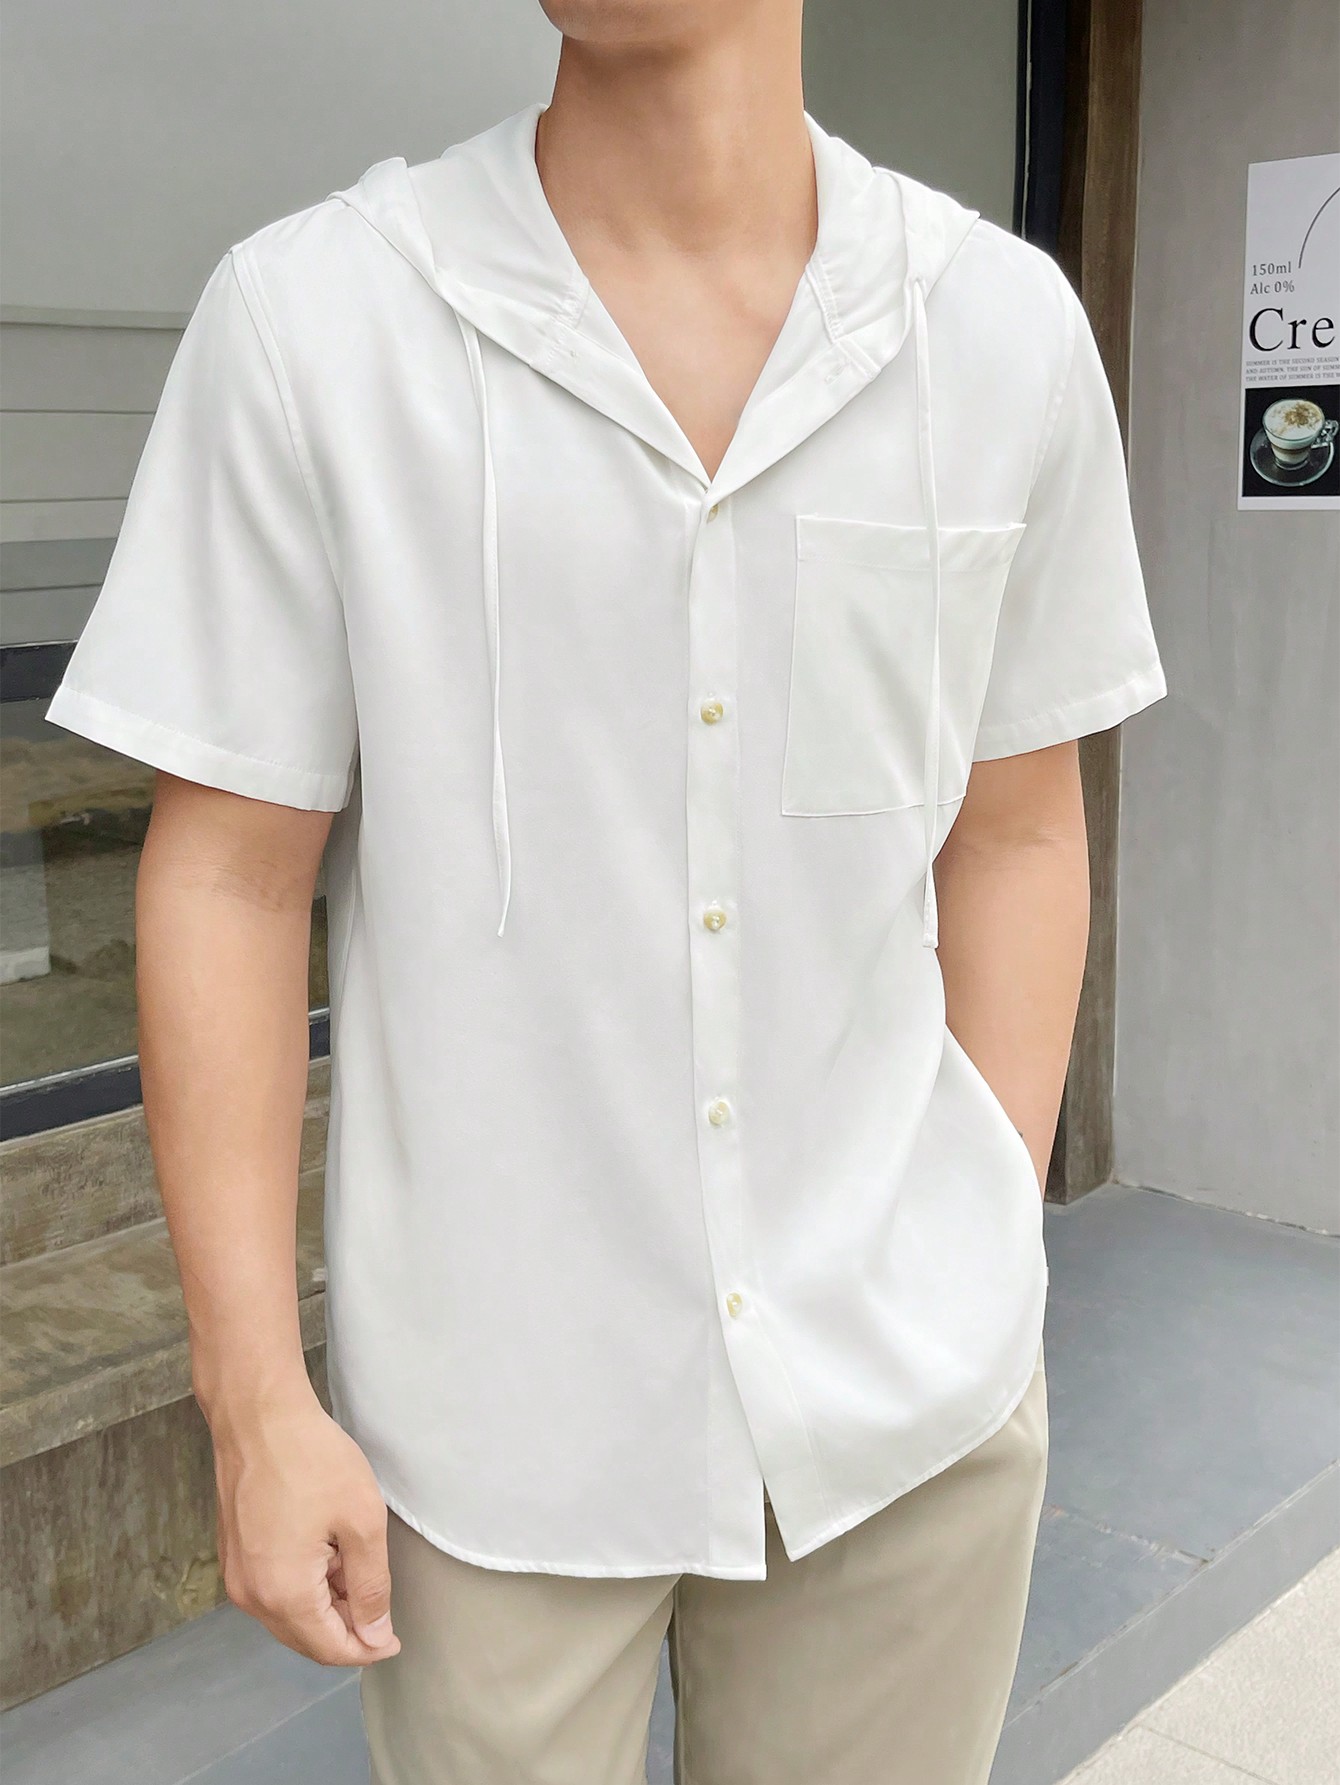 Мужская повседневная тканая рубашка с капюшоном и короткими рукавами Manfinity Hypemode, белый мужская повседневная тканая рубашка с длинными рукавами и рюшами manfinity aftrdrk коричневый